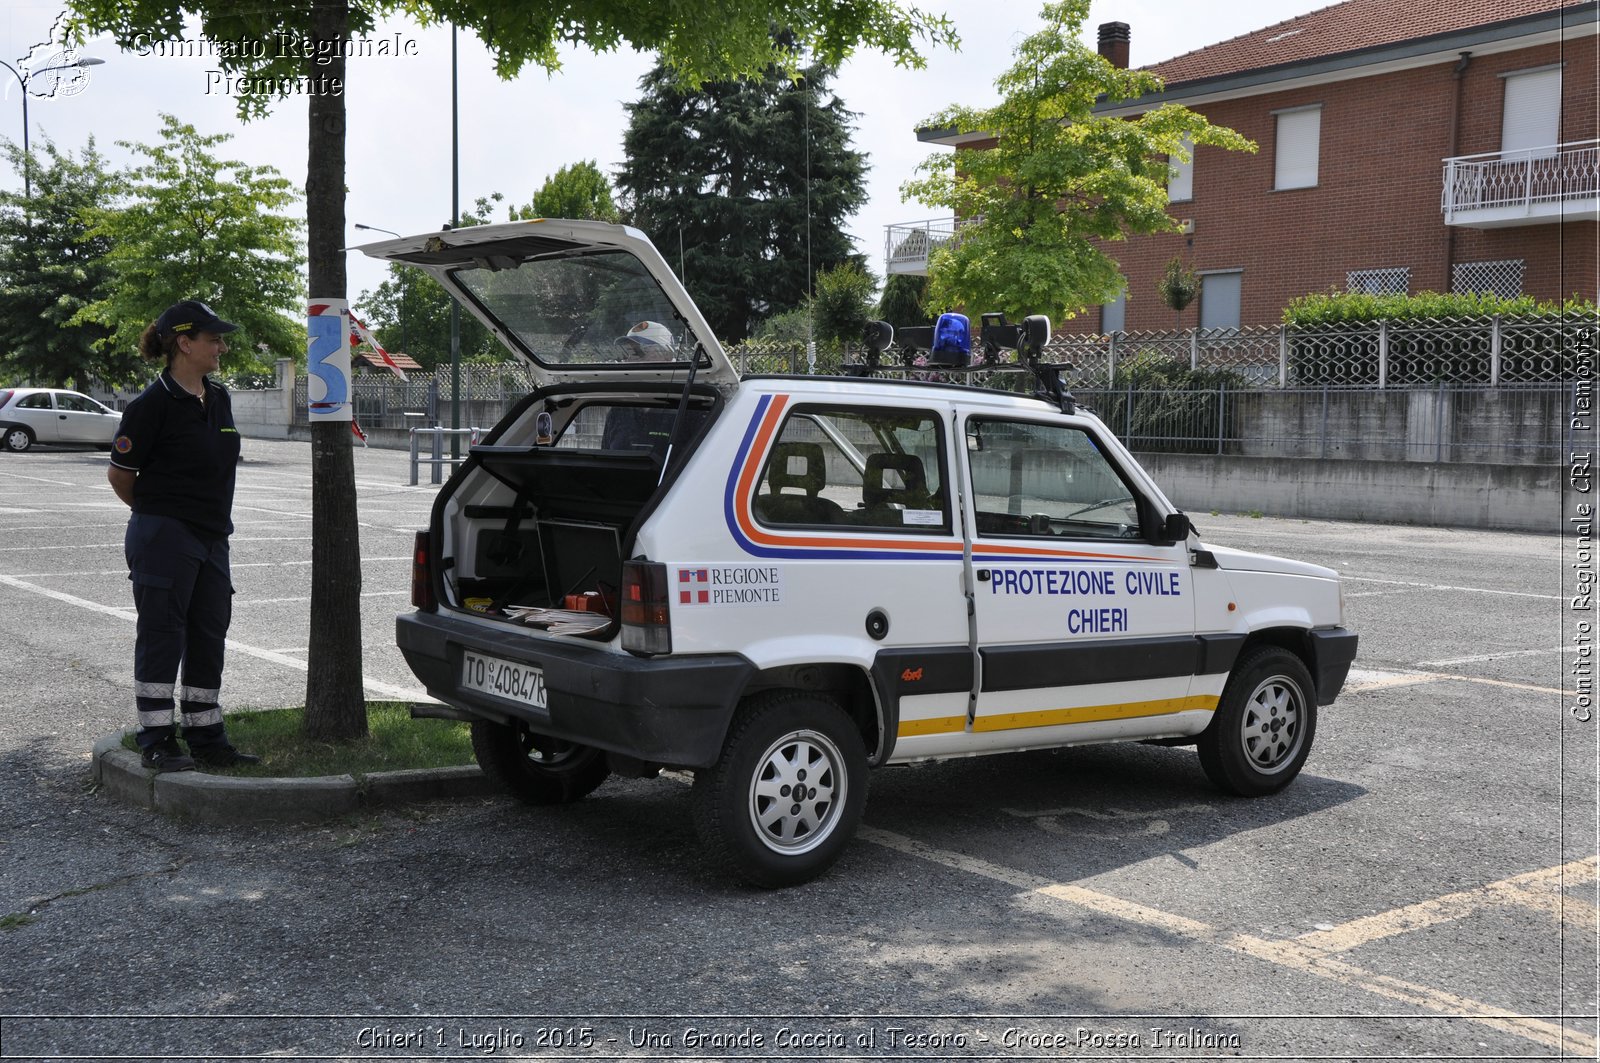 Chieri 1 Luglio 2015 - Una Grande Caccia al Tesoro - Croce Rossa Italiana- Comitato Regionale del Piemonte